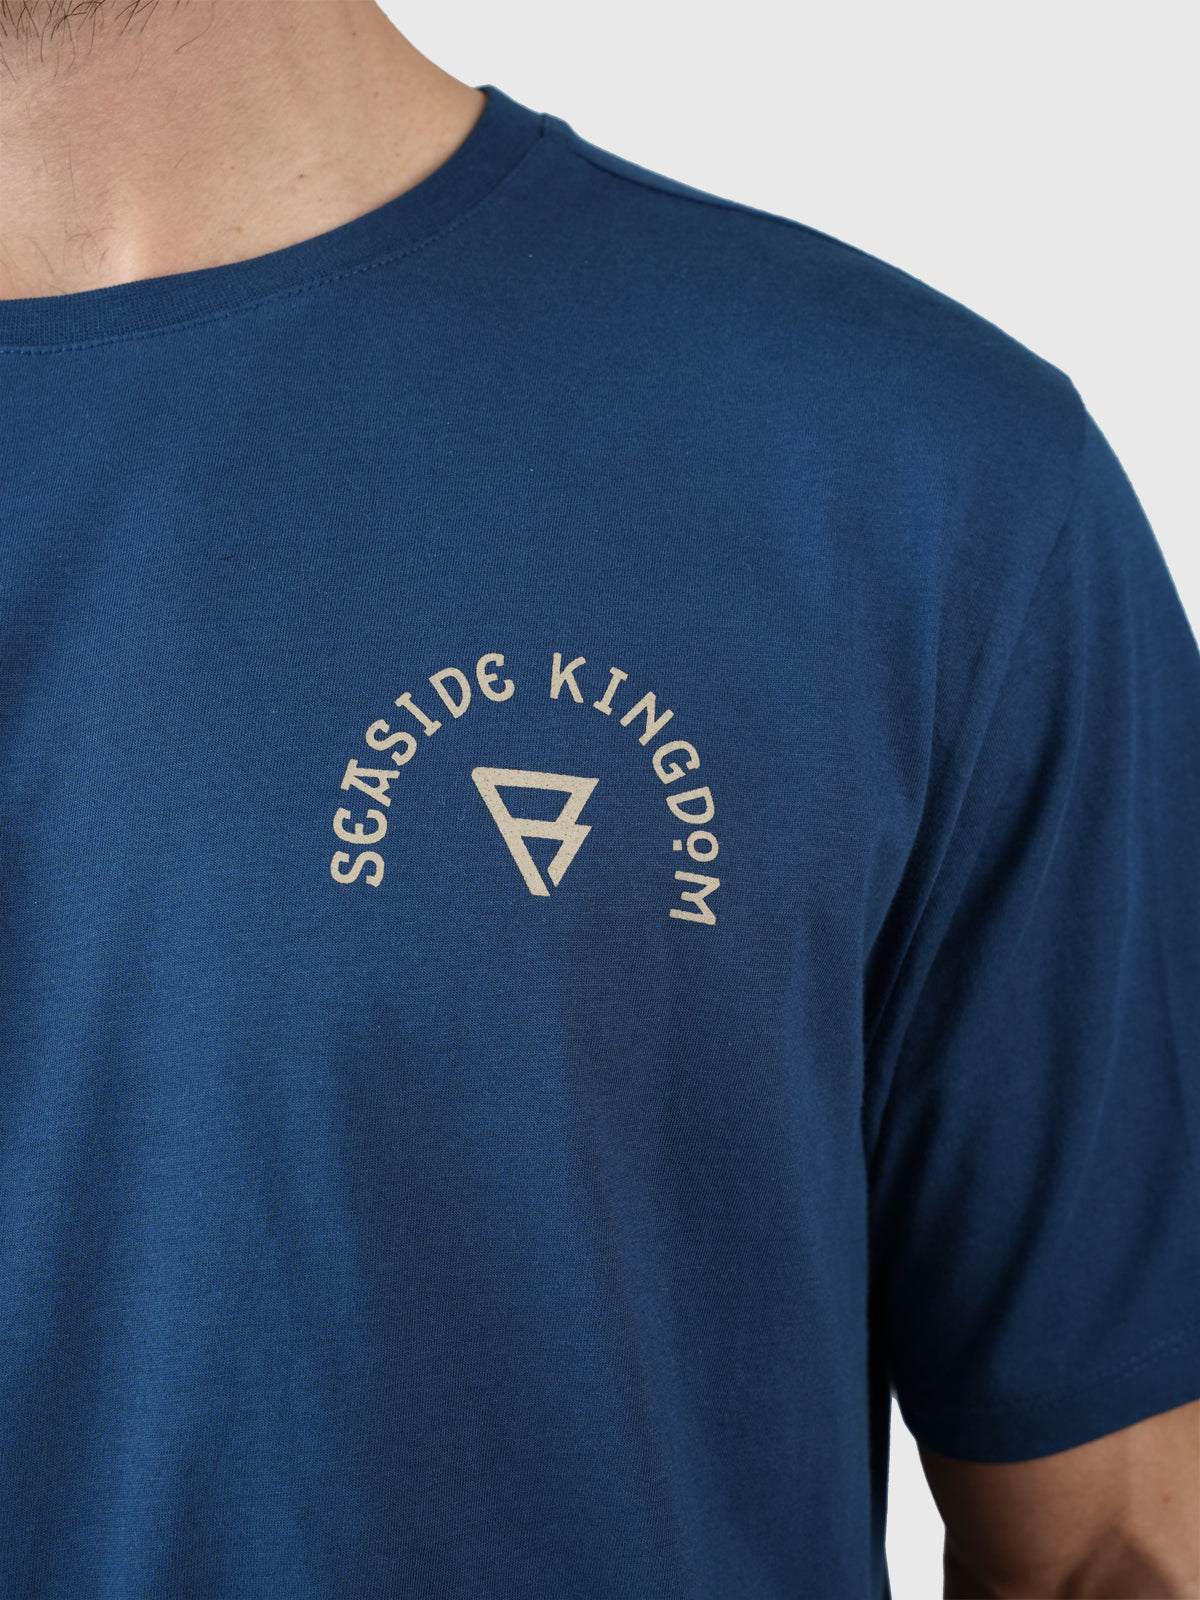 Kingfin Herren T-shirt | Blau